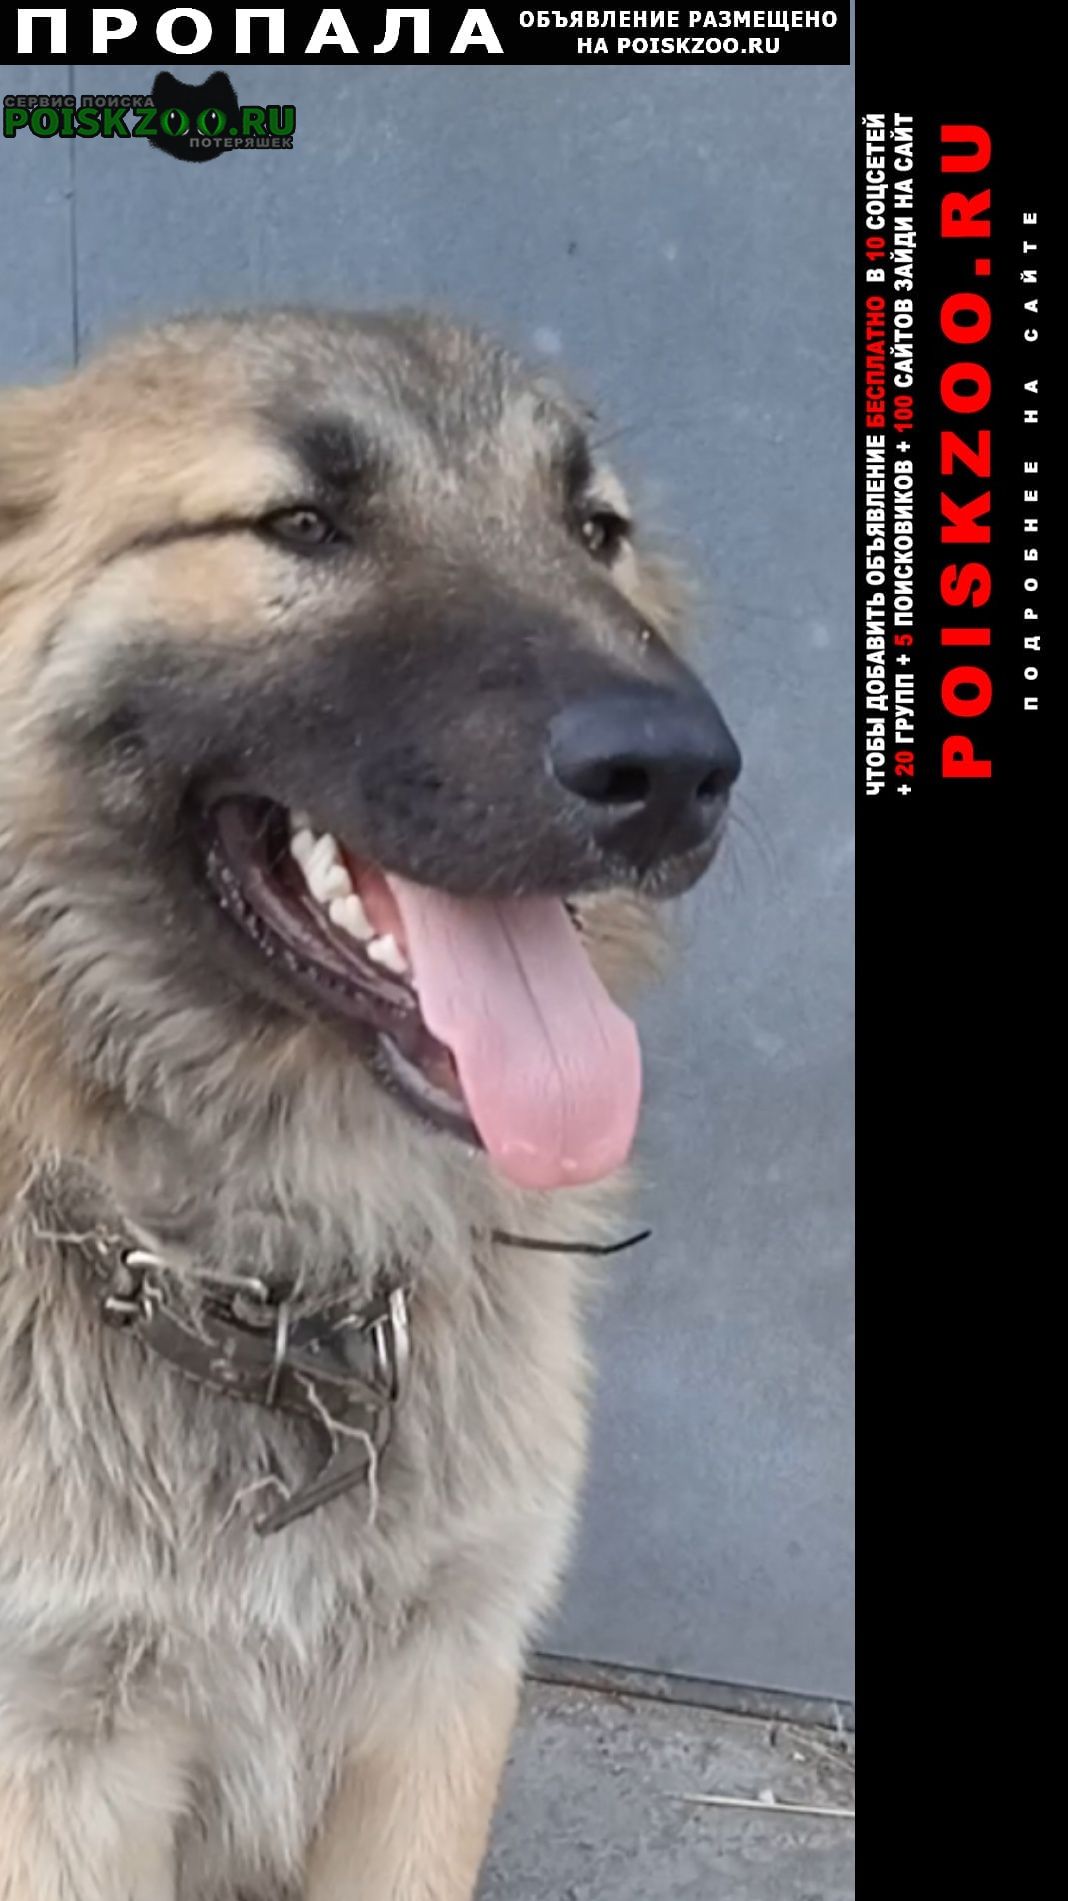 Пропала собака кобель в районе витебского просп Санкт-Петербург